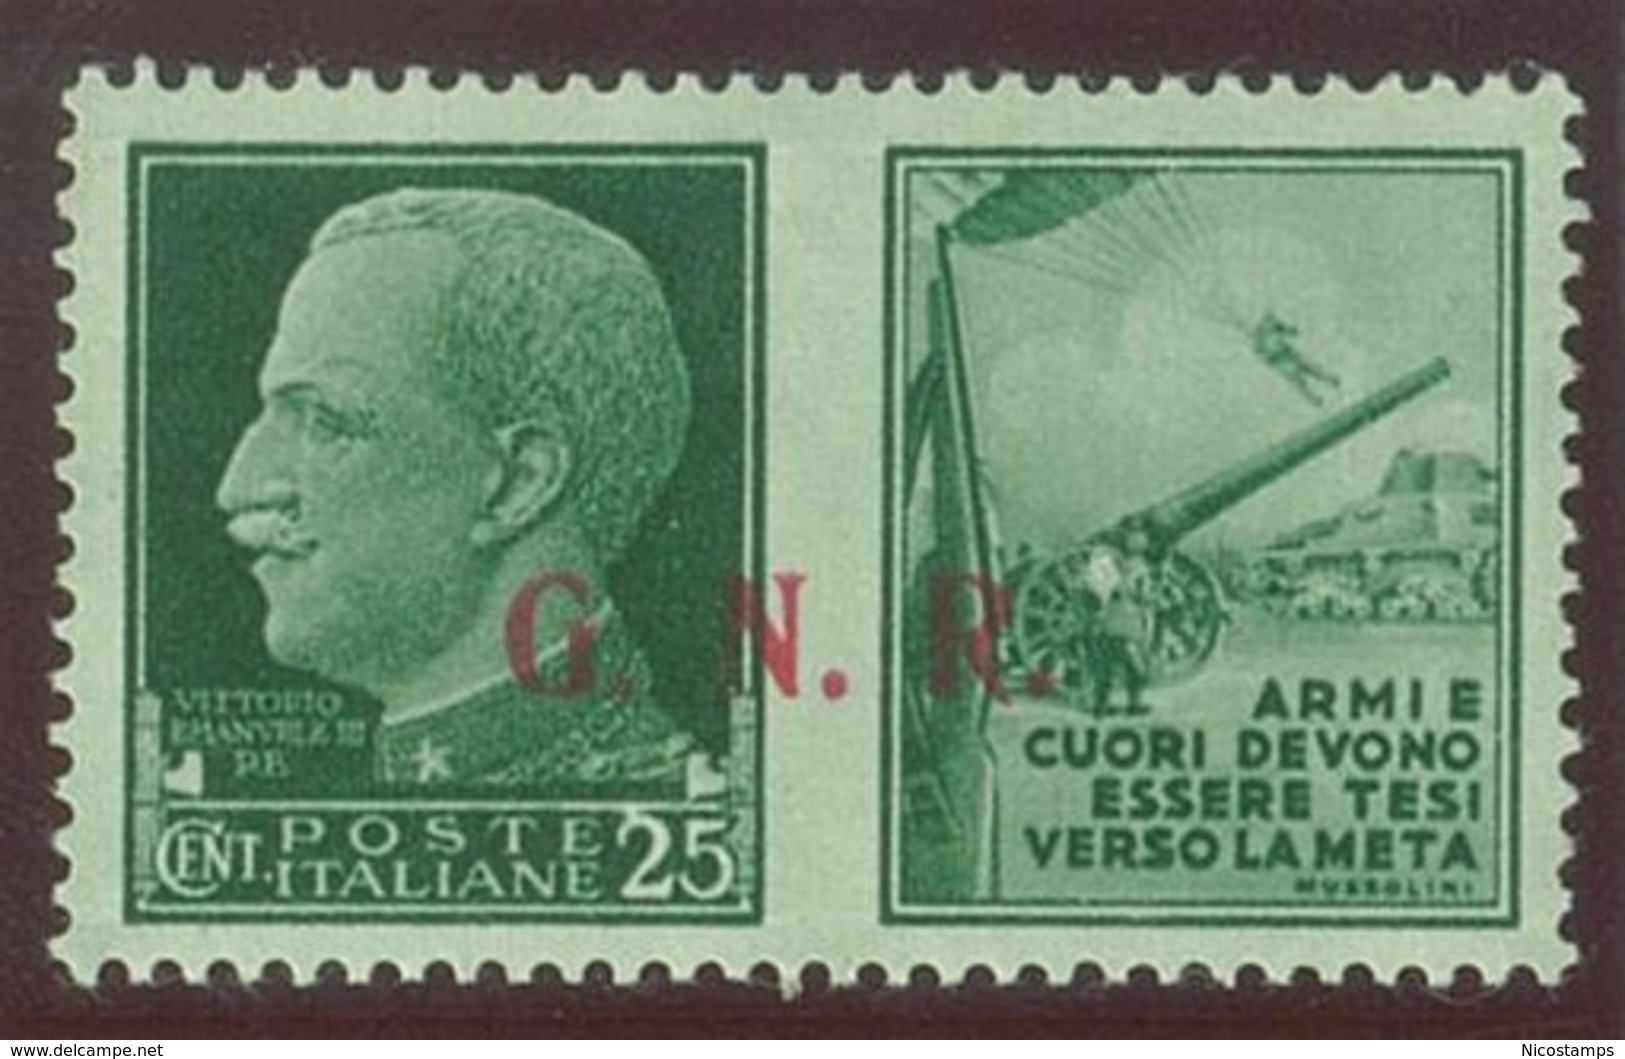 ITALIA REPUBBLICA SOCIALE ITALIANA (R.S.I.) SASS. P.G. 14/IIIed  NUOVO - Propagande De Guerre